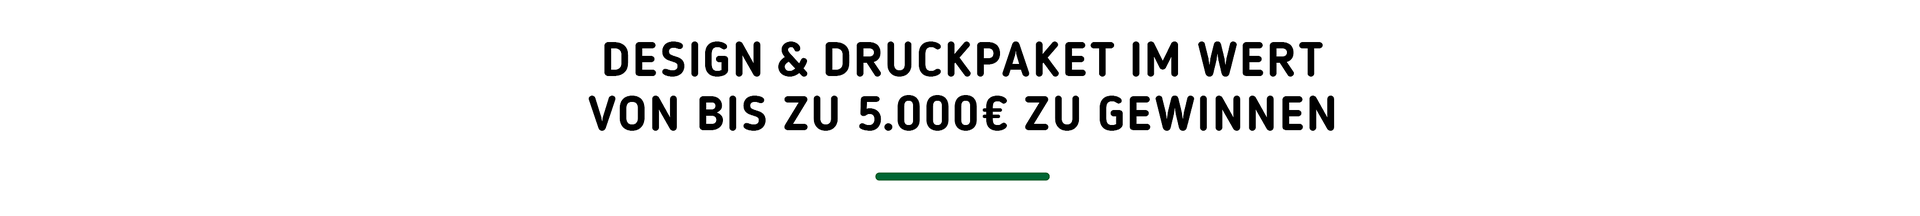 Überschrift: Design & Druckpaket im Wert von bis zu 5.000€ zu gewinnen 